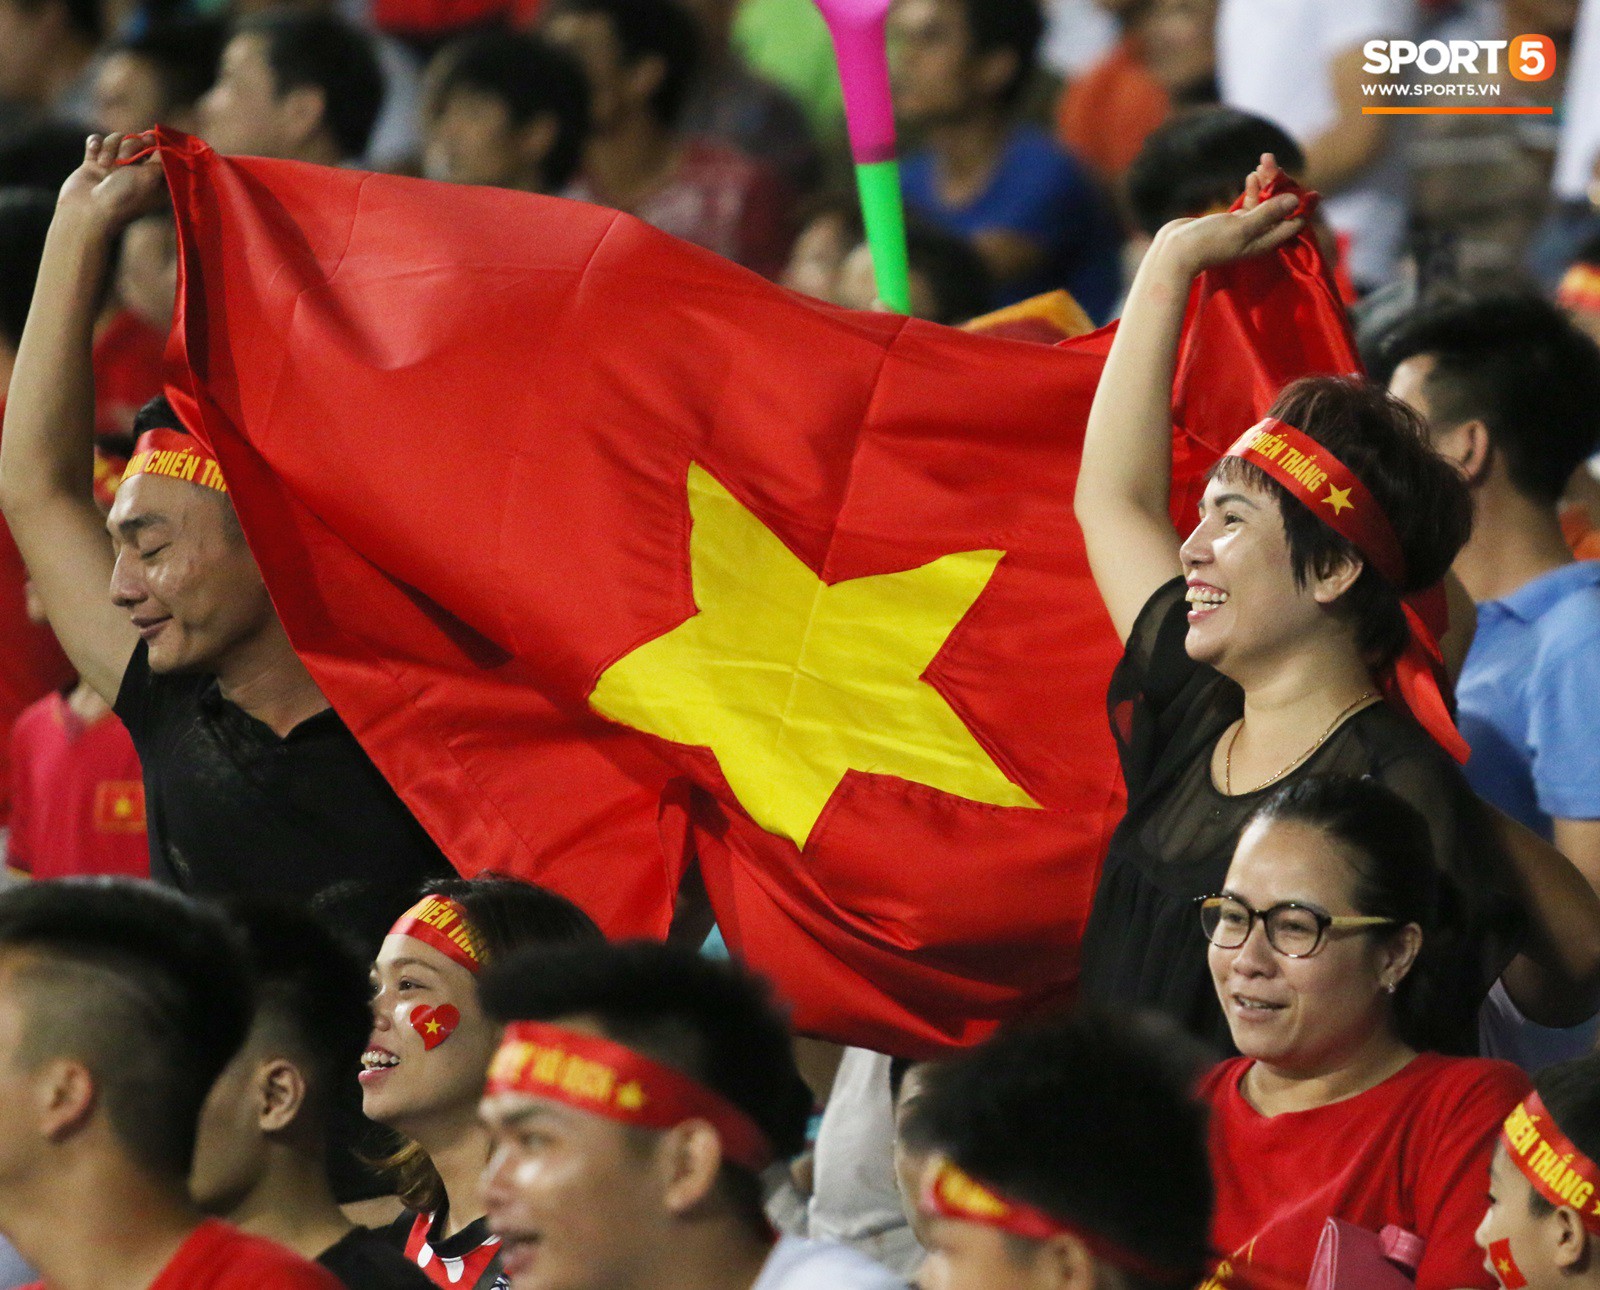 Những điều thú vị bạn có thể đã bỏ qua trên khán đài trong chiến thắng của U23 Việt Nam - Ảnh 12.